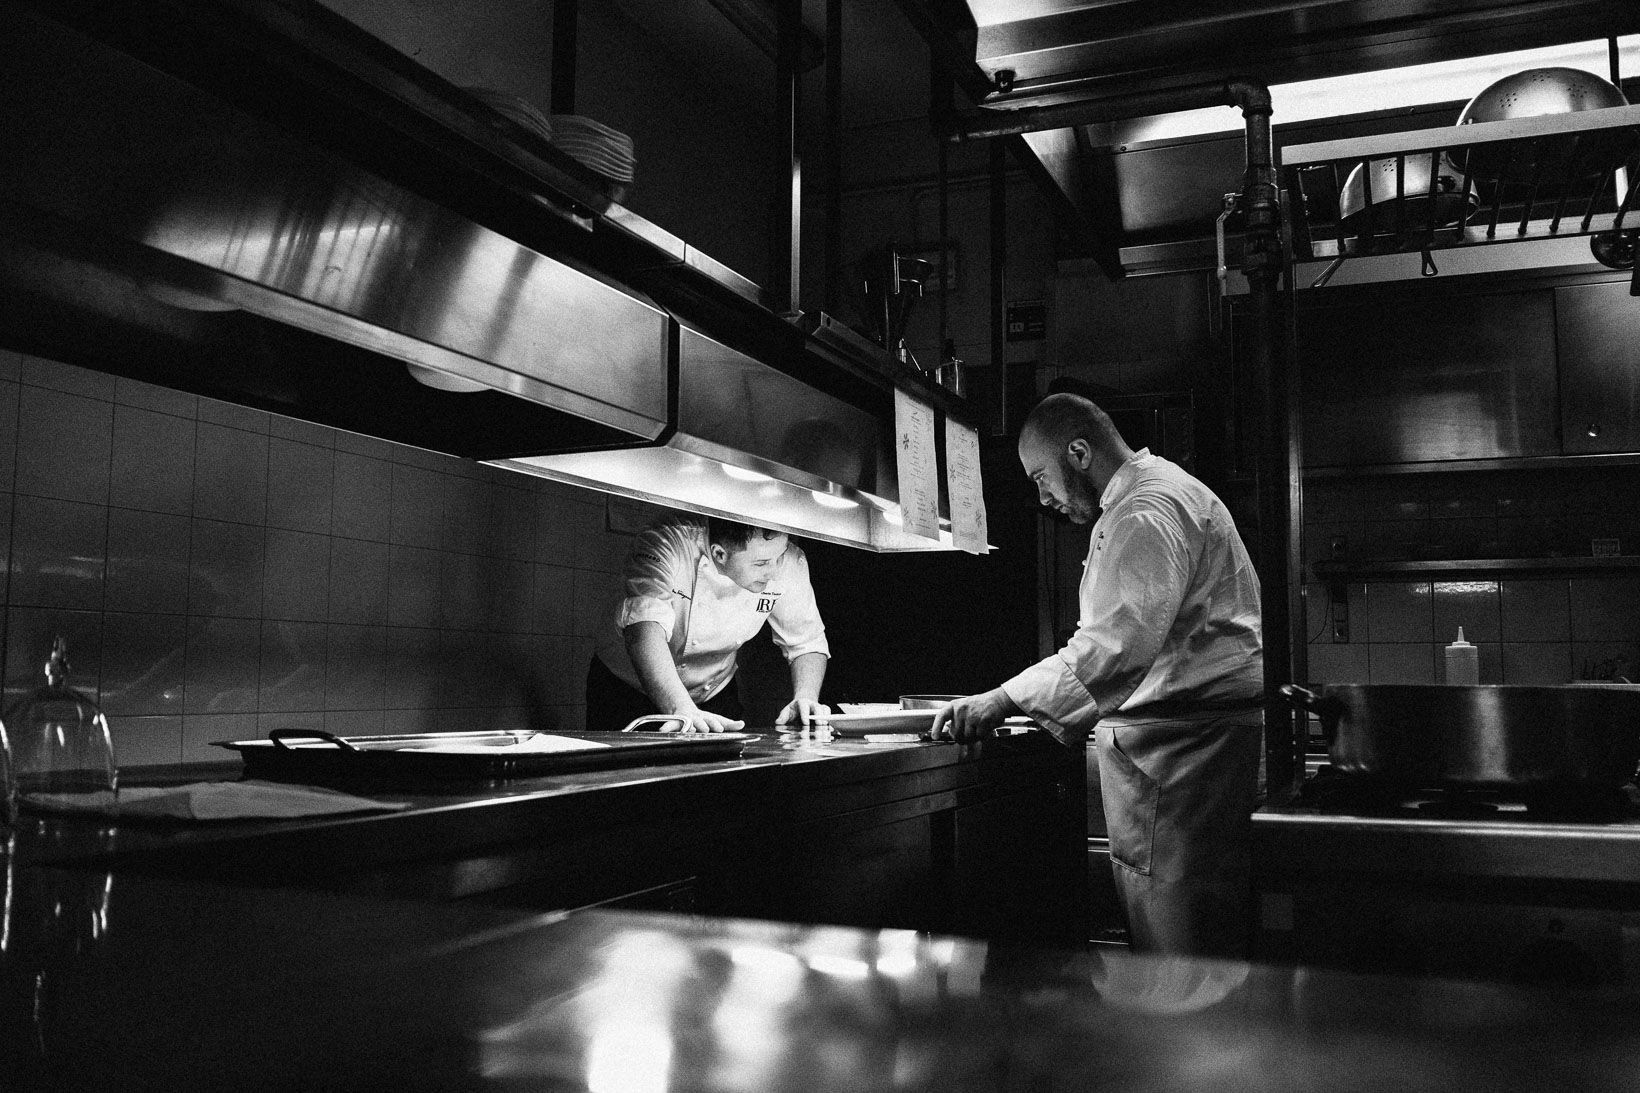 Rui-Lorenzo-Fotografo-food-chef-alberto-tonizzo-ristorante-al-ferarut-udine-jre-_X1F1070_web